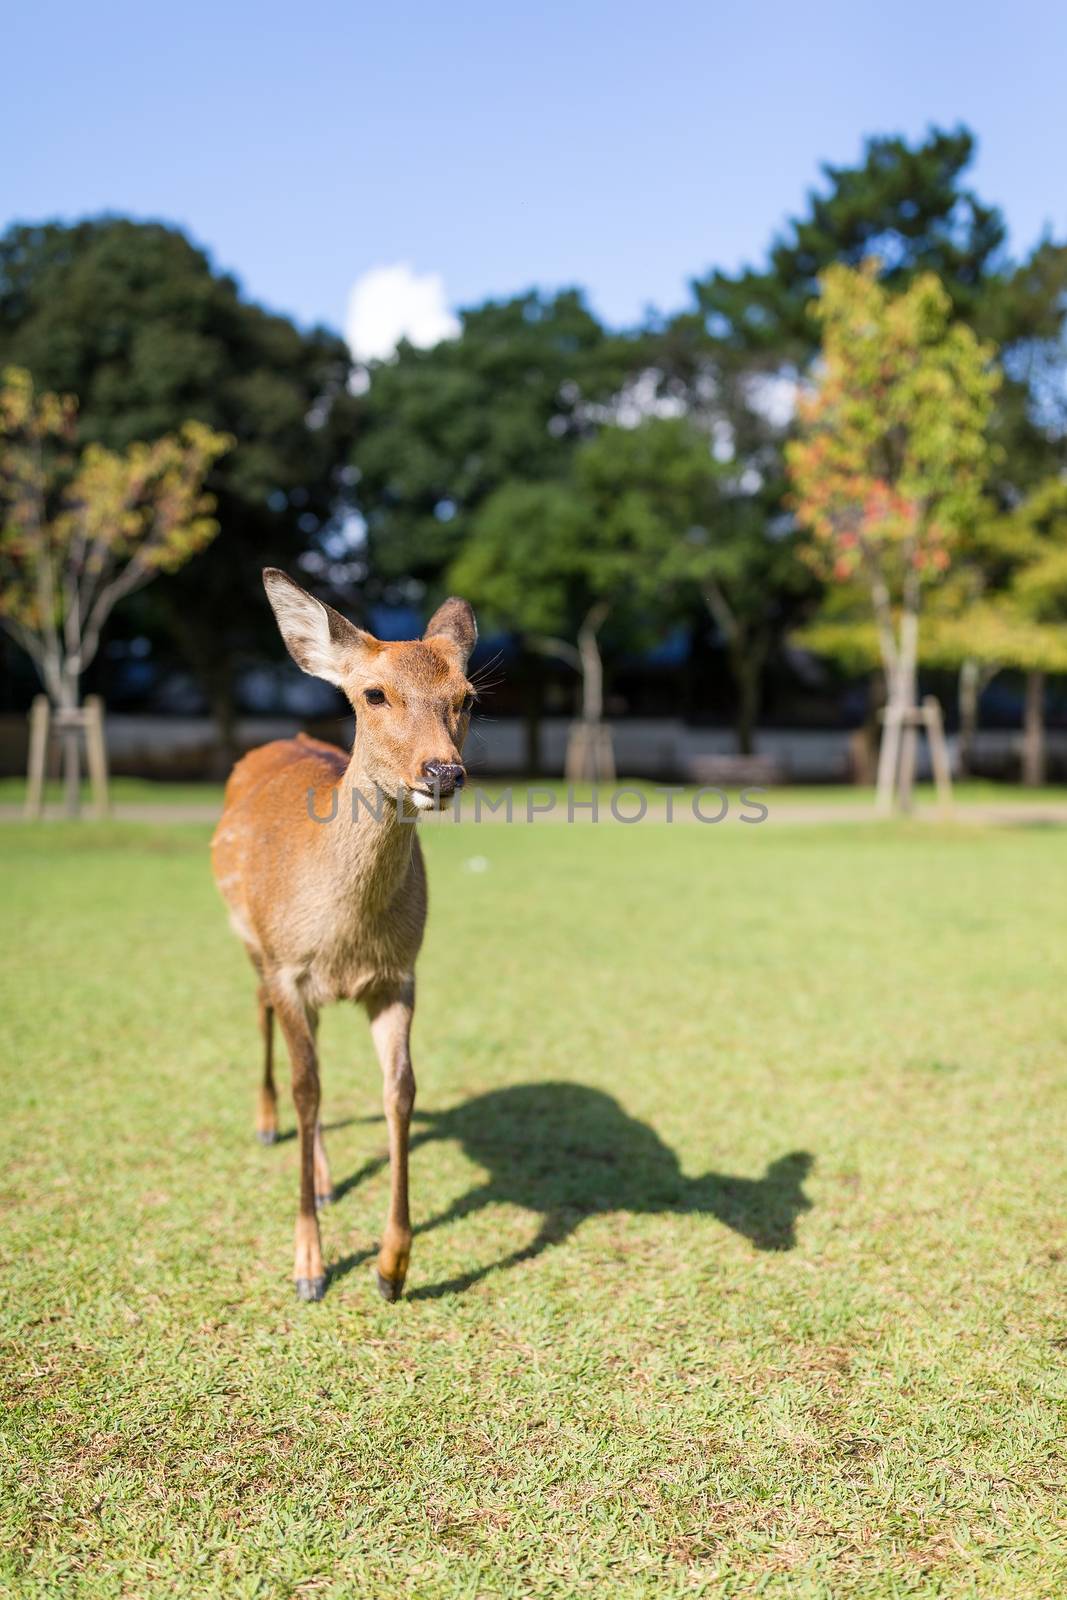 Lovely Deer walking in a park